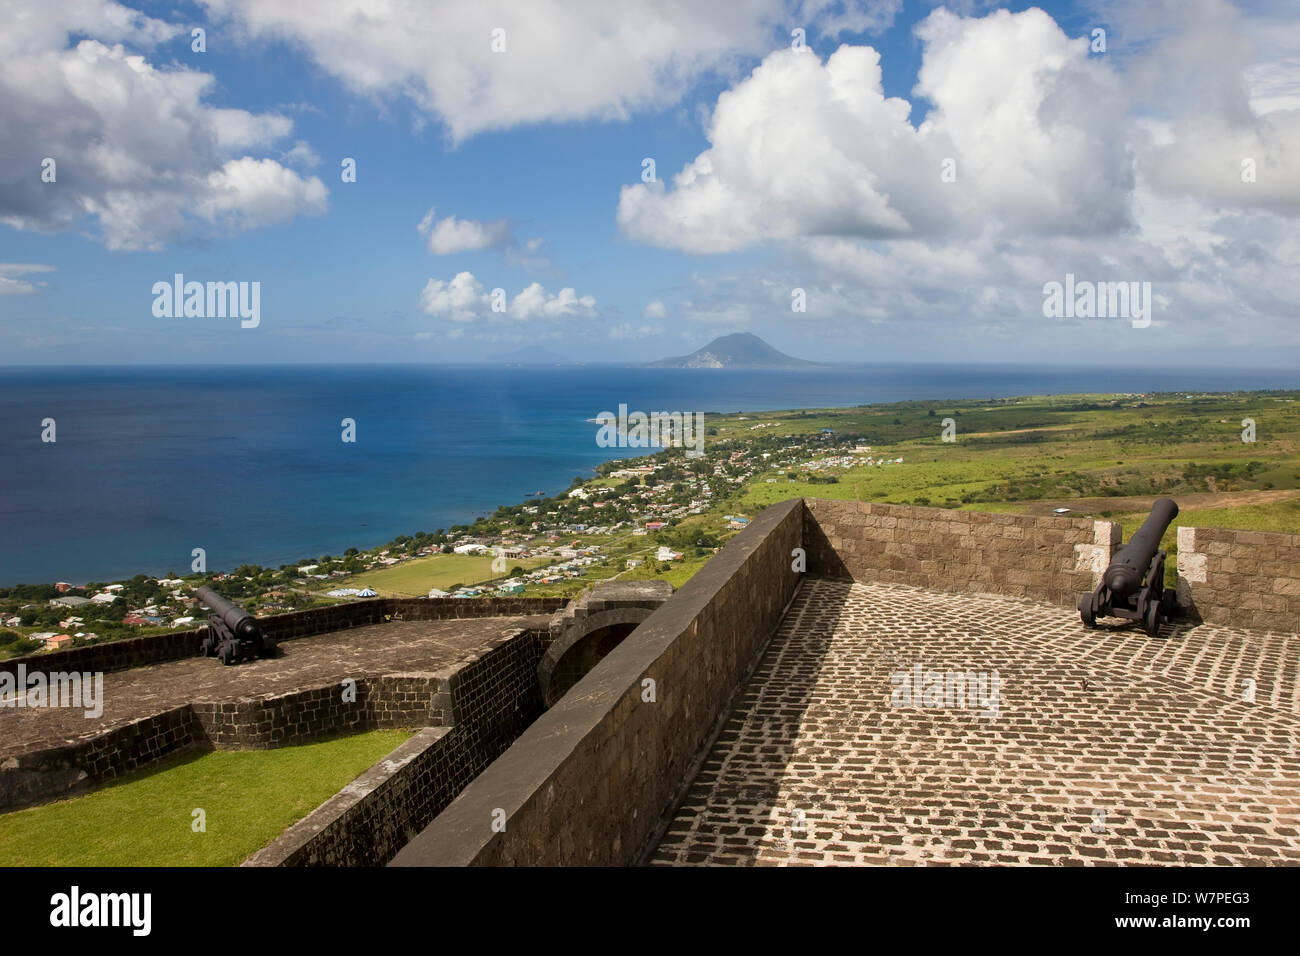 Vista elevada de Brimstone Hill Fortress, que está situado a 790 metros sobre el nivel del mar mirando hacia San Eustasio isla y el Mar Caribe, el Parque Nacional Brimstone Hill Fortress es un sitio del Patrimonio Mundial de la UNESCO, St Kitts, Saint Kitts y Nevis, Islas de Sotavento, Antillas Menores del Caribe, West Indies 2008 Foto de stock